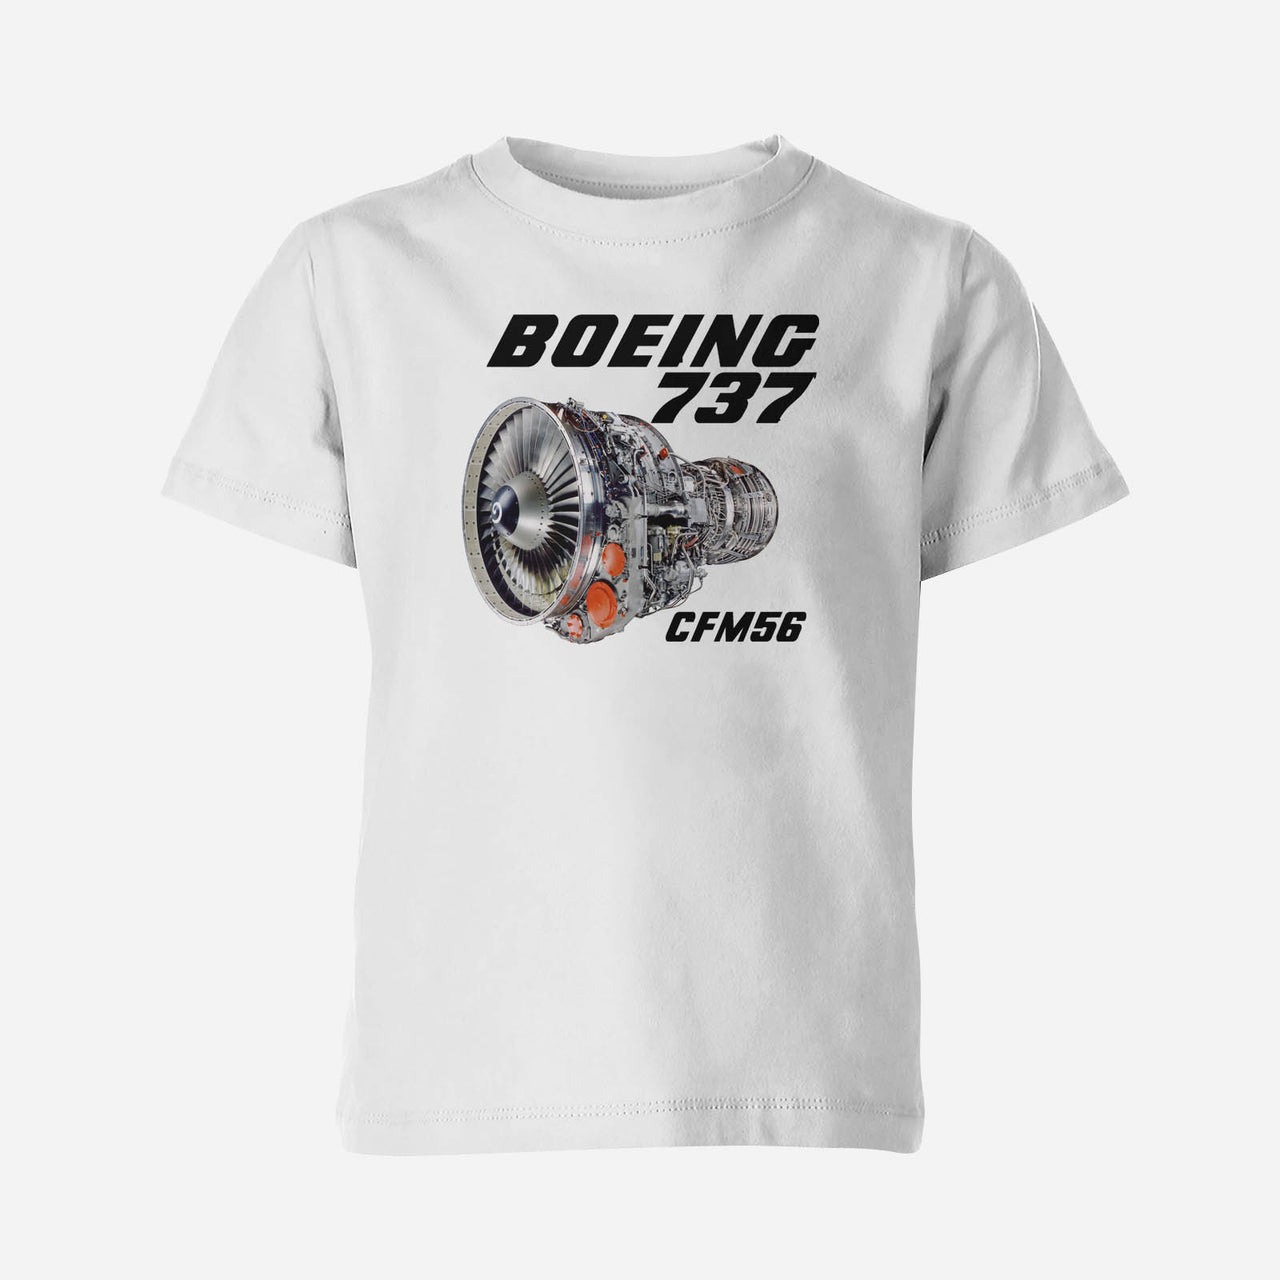 Boeing 737 Engine & CFM56 Engine Designed Children T-Shirts